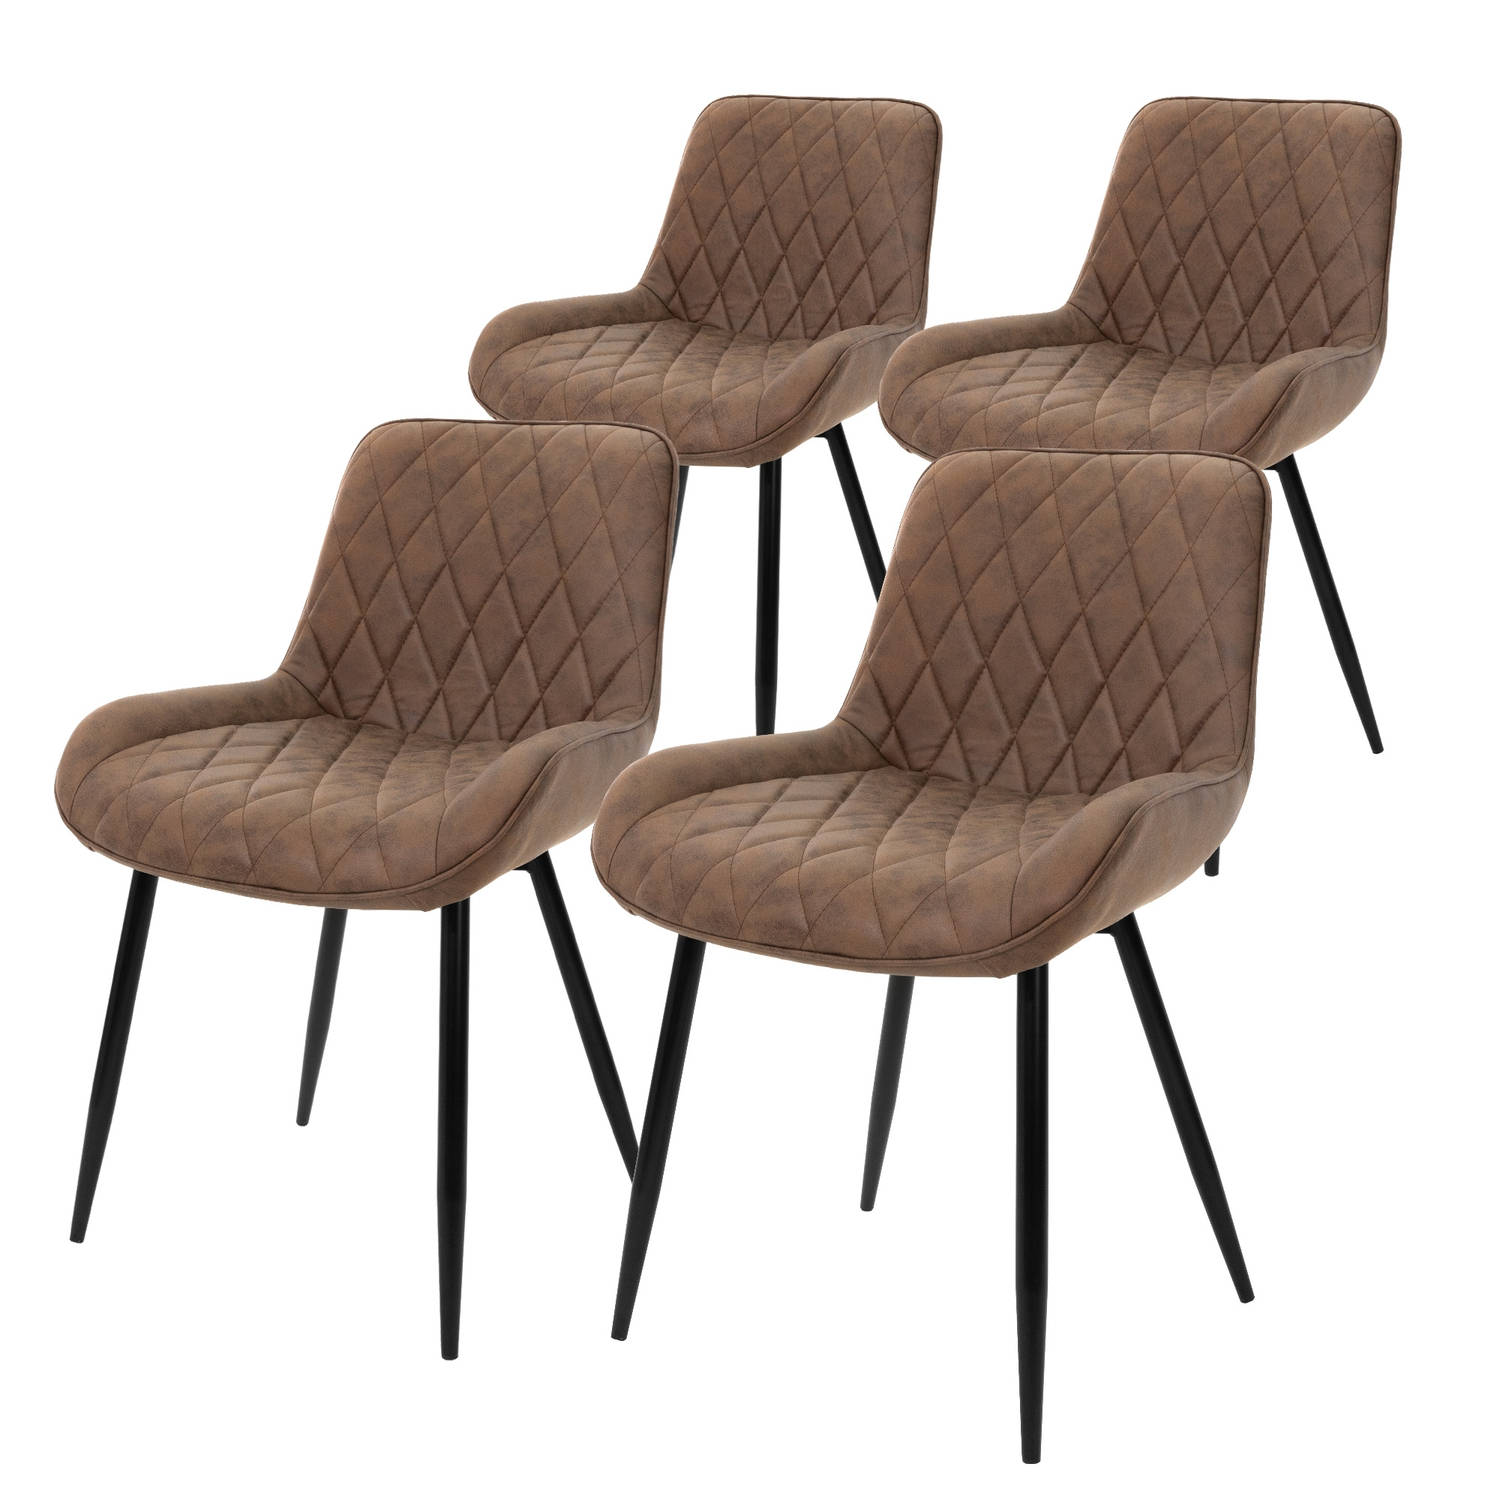 ML-Design Set van 4 Eetkamerstoelen Eetkamerstoel met rugleuning en armleuningen, bruin, PU kunstlederen zitting, metalen poten, keukenstoelen woonkamerstoelen gestoffeerde stoel